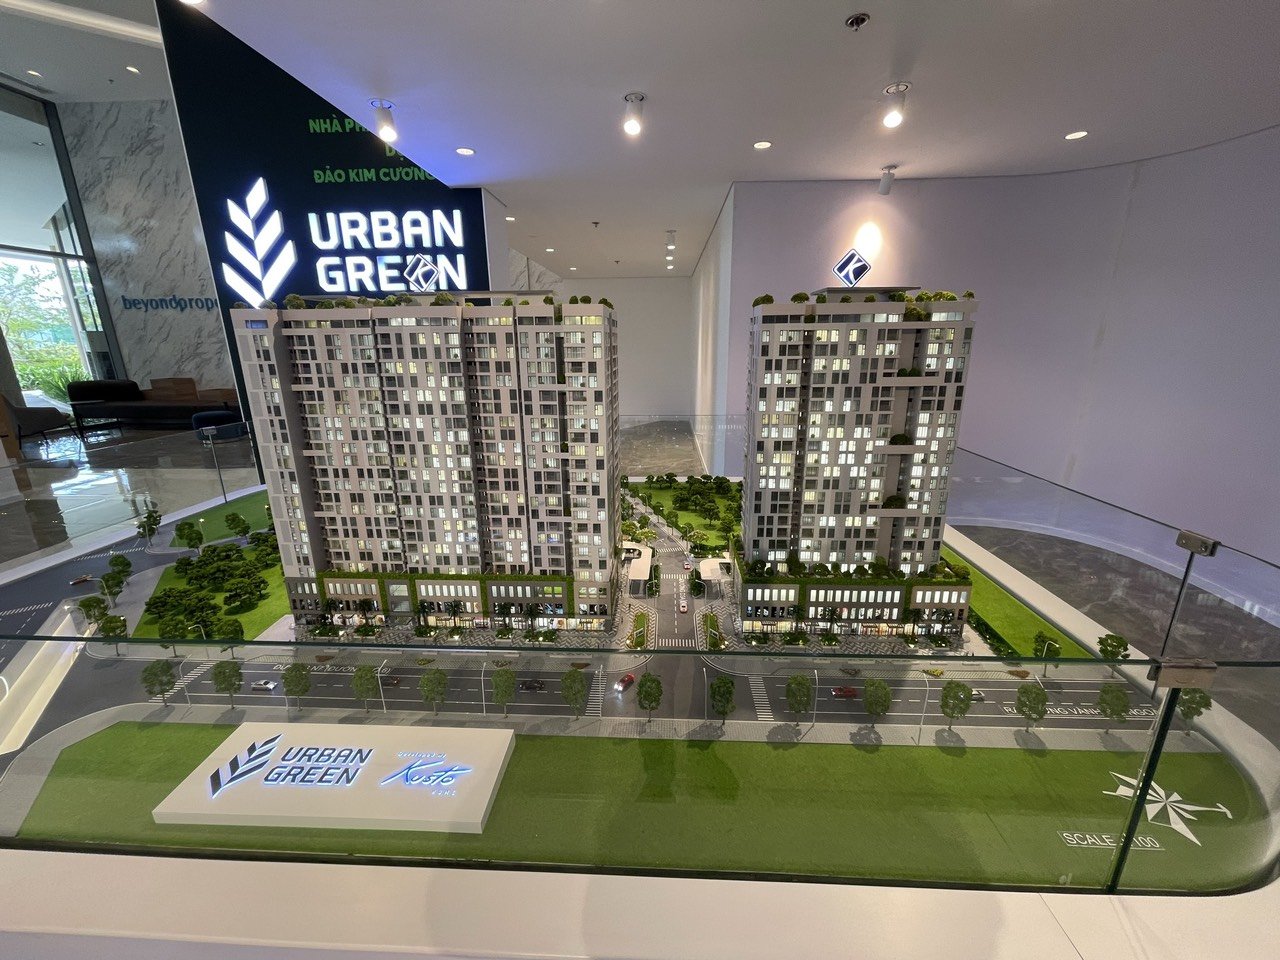 Bán căn hộ 1 PN Urban Green tầng cao giá tốt trong tháng 10 LH 0835379247 gặp Phúc